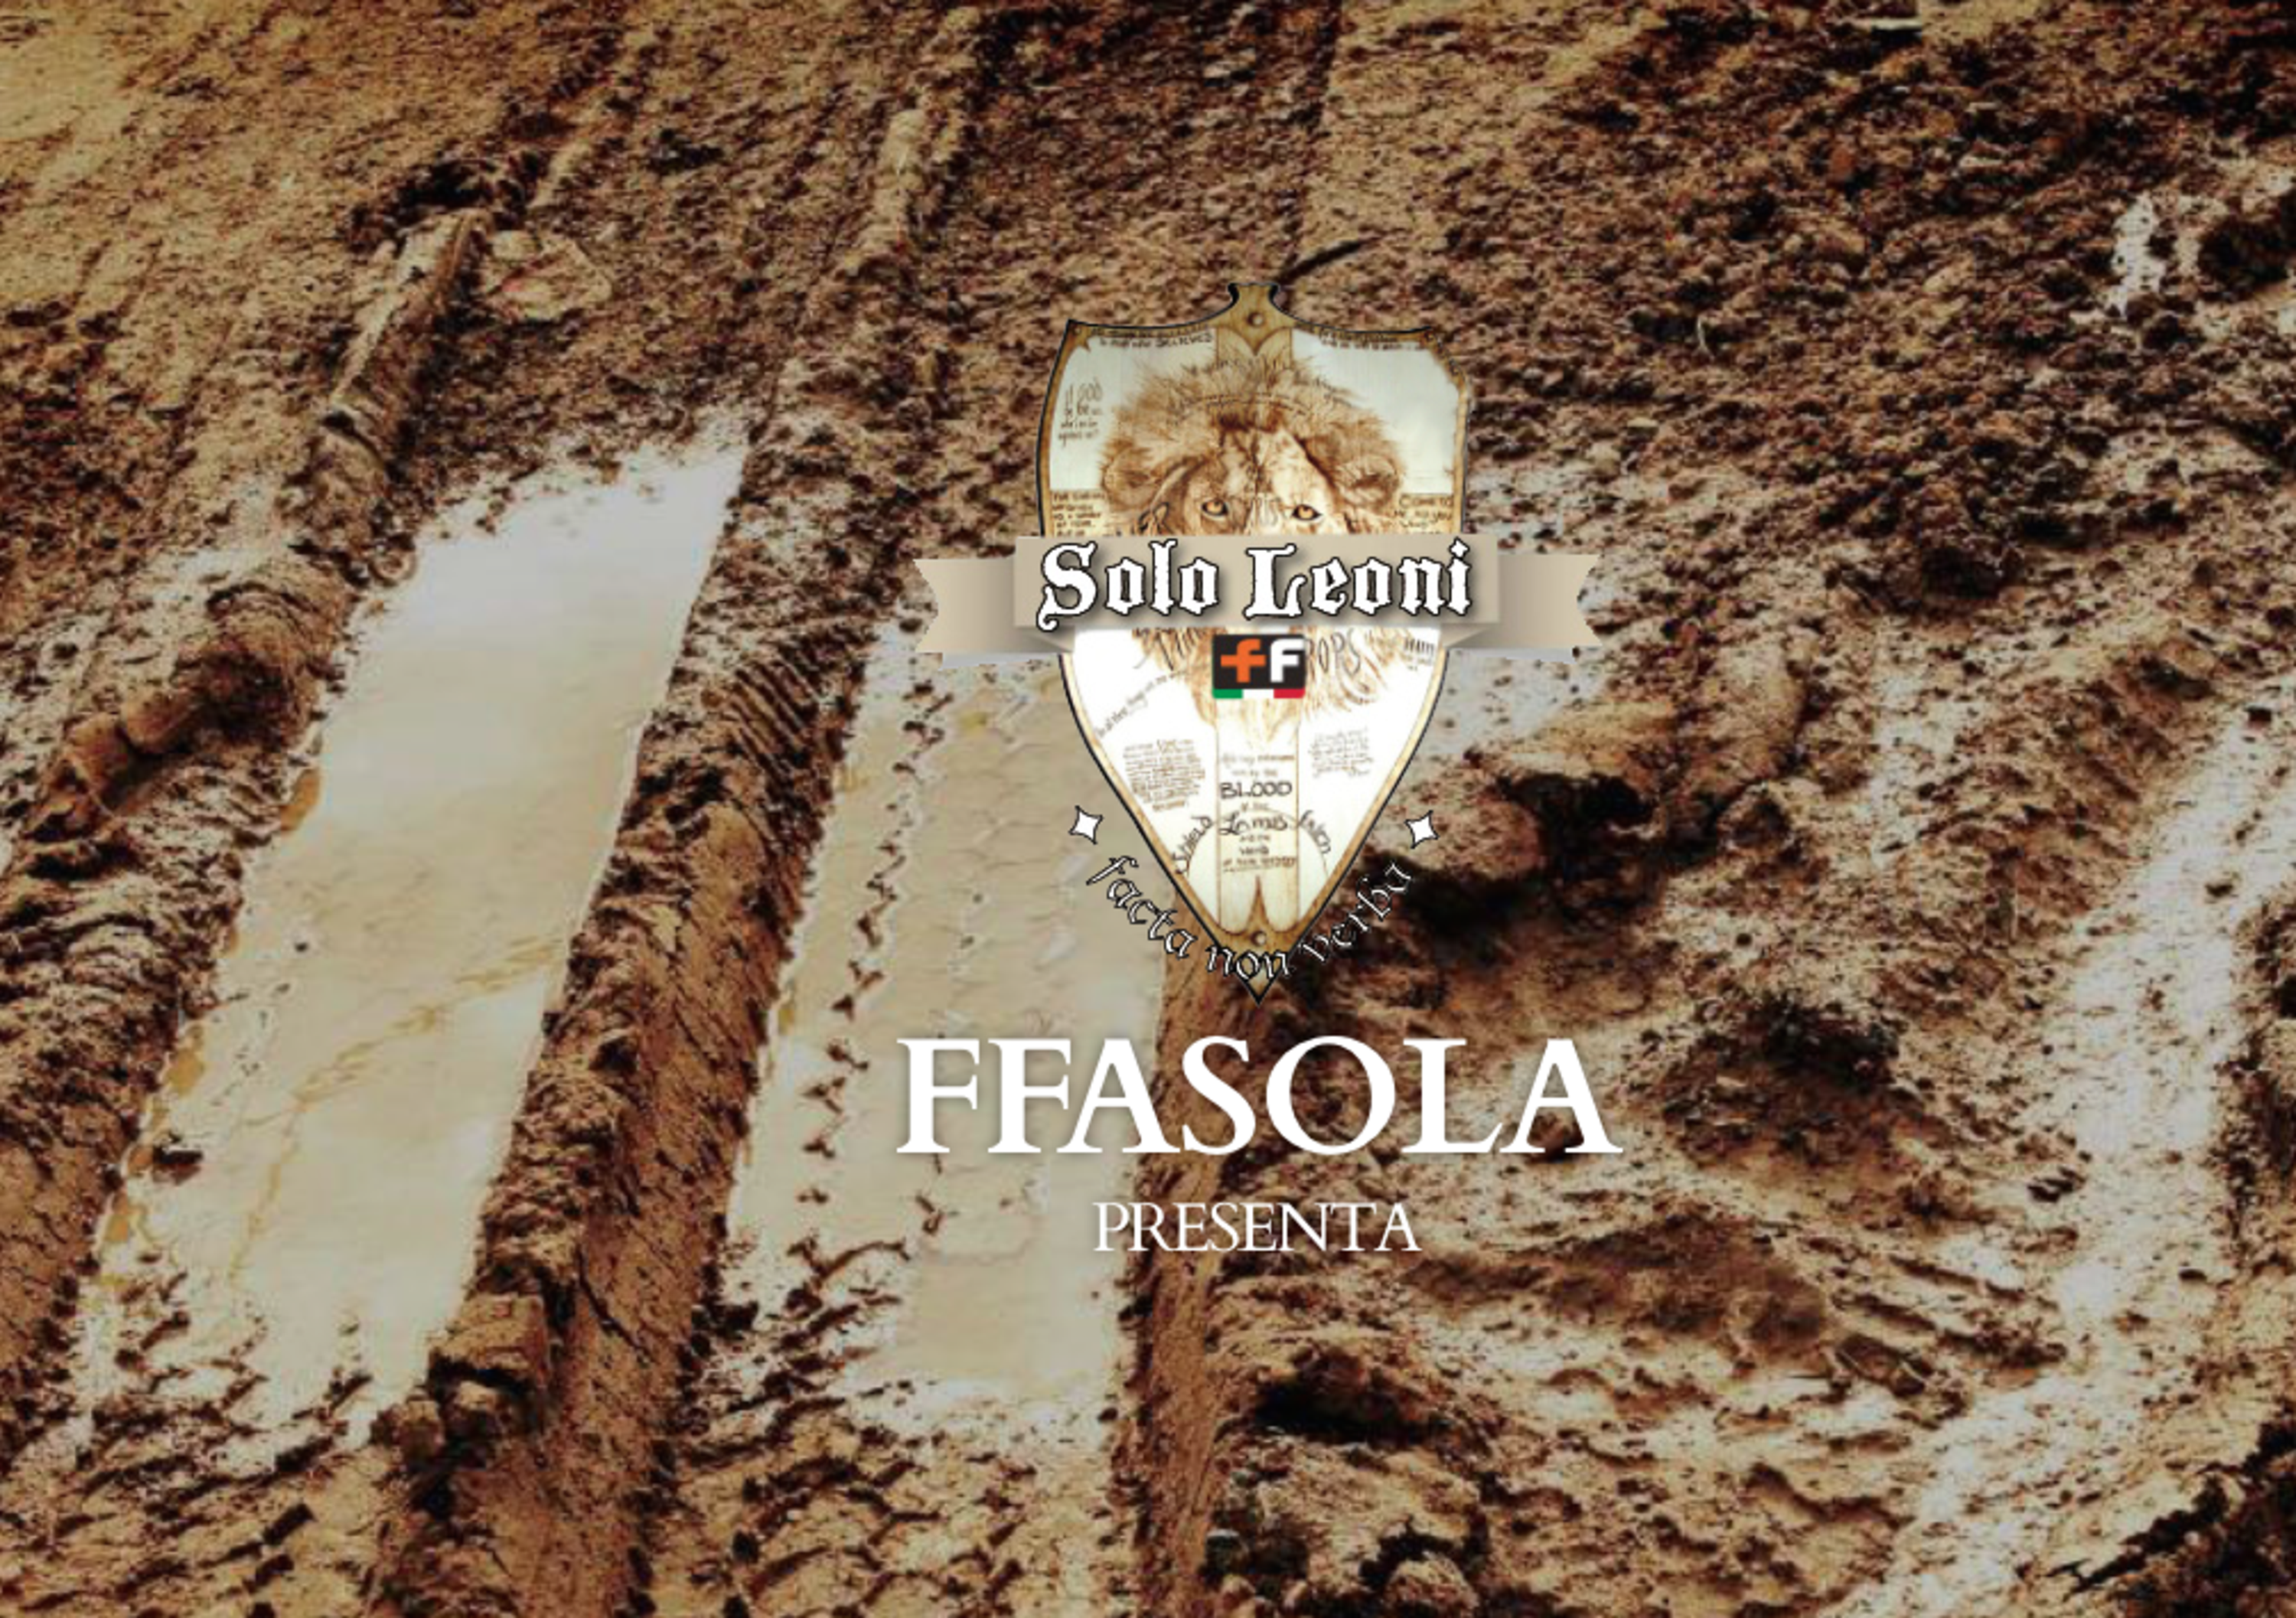 FFasola: Solo Leoni, per divertirsi nella Savana Toscana